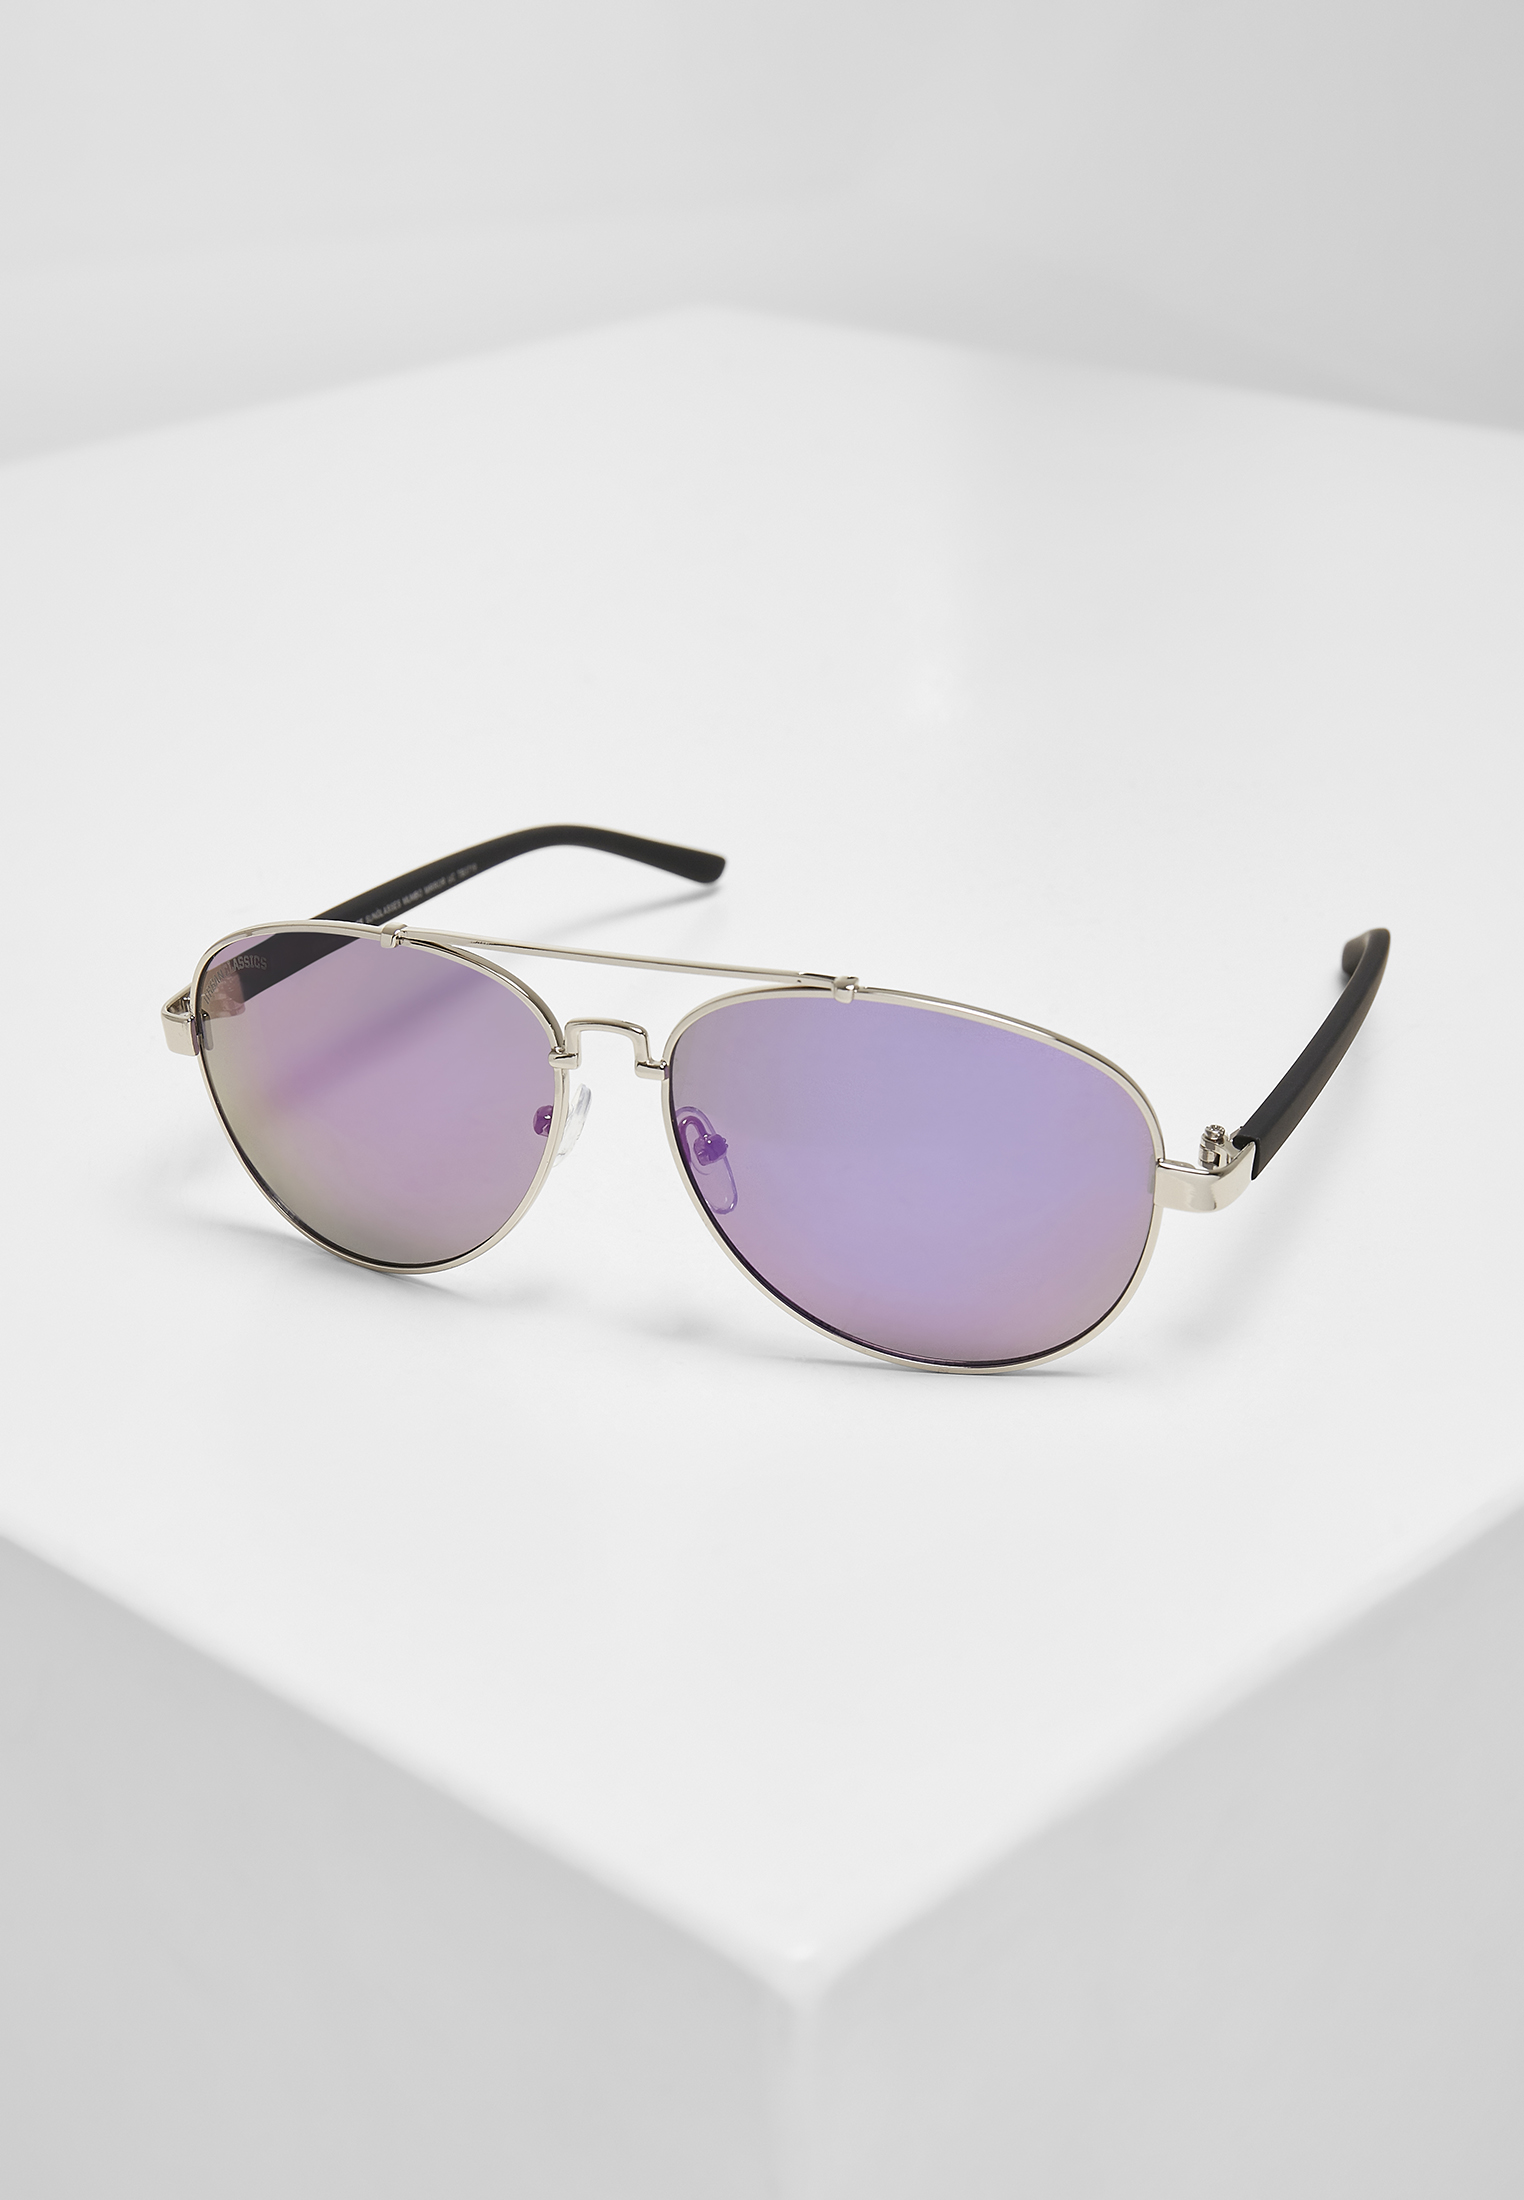 Sonnenbrillen Sunglasses Mumbo Mirror UC in Farbe silver/purple